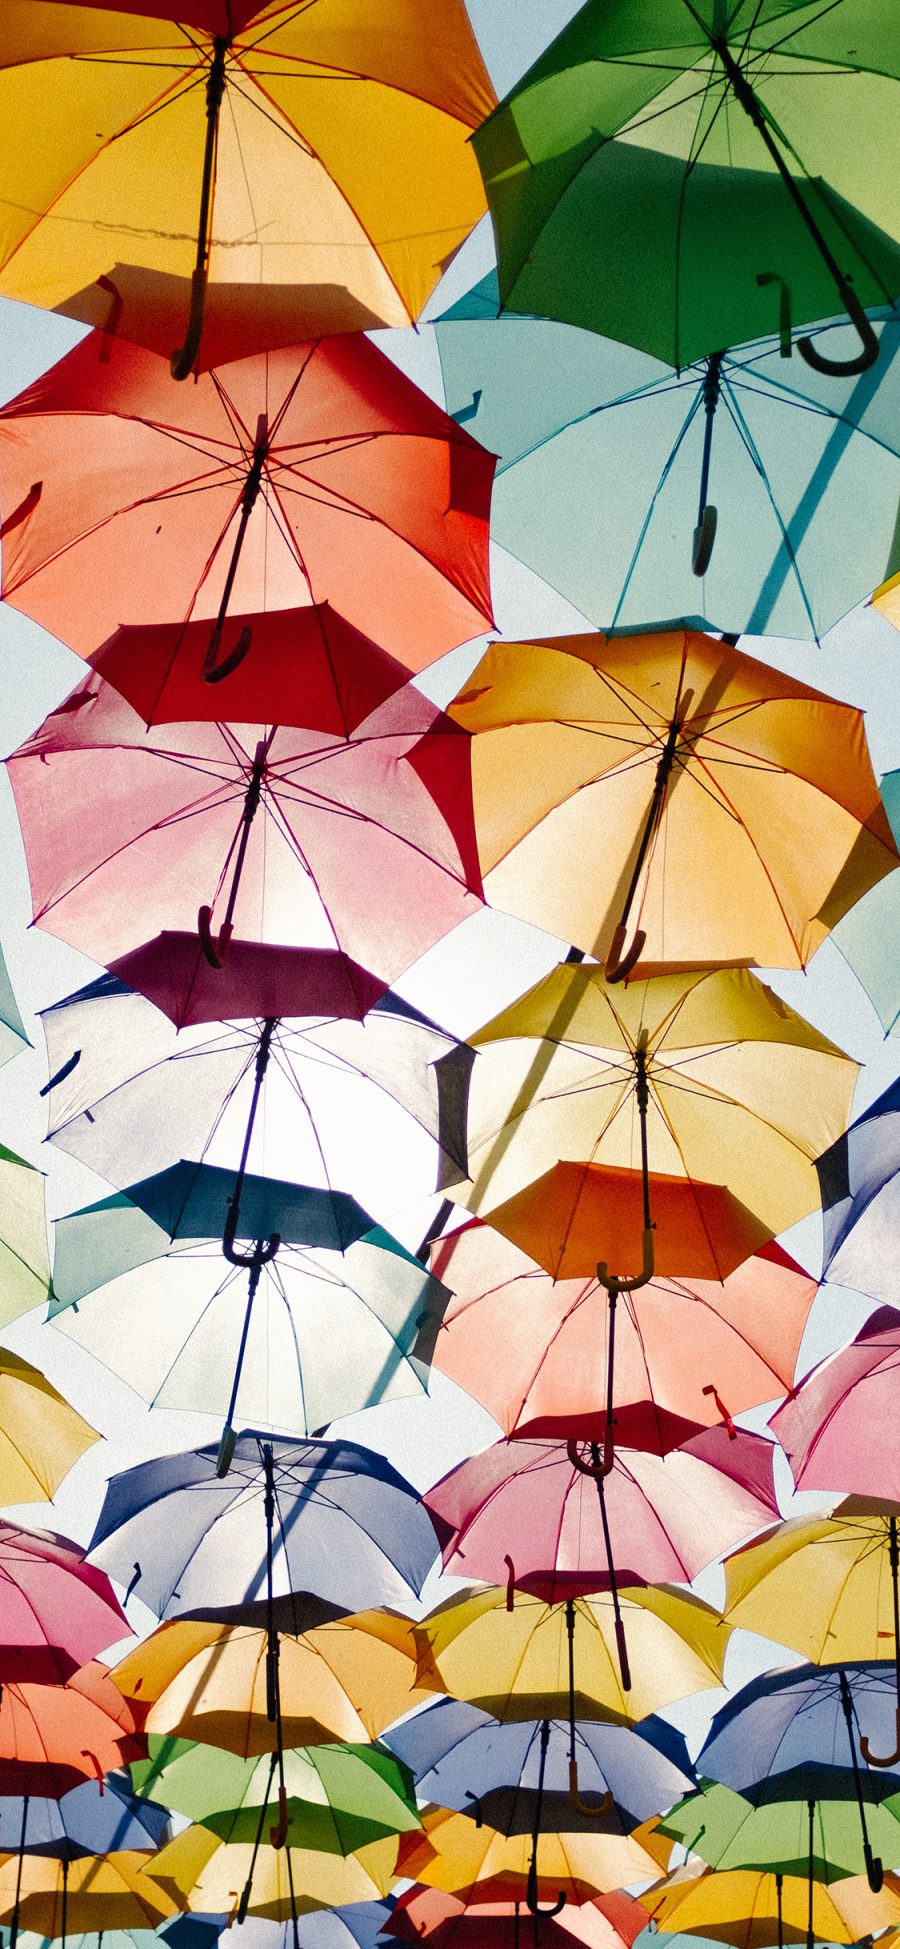 [2436×1125]天空 雨伞 悬空 色彩 苹果手机壁纸图片